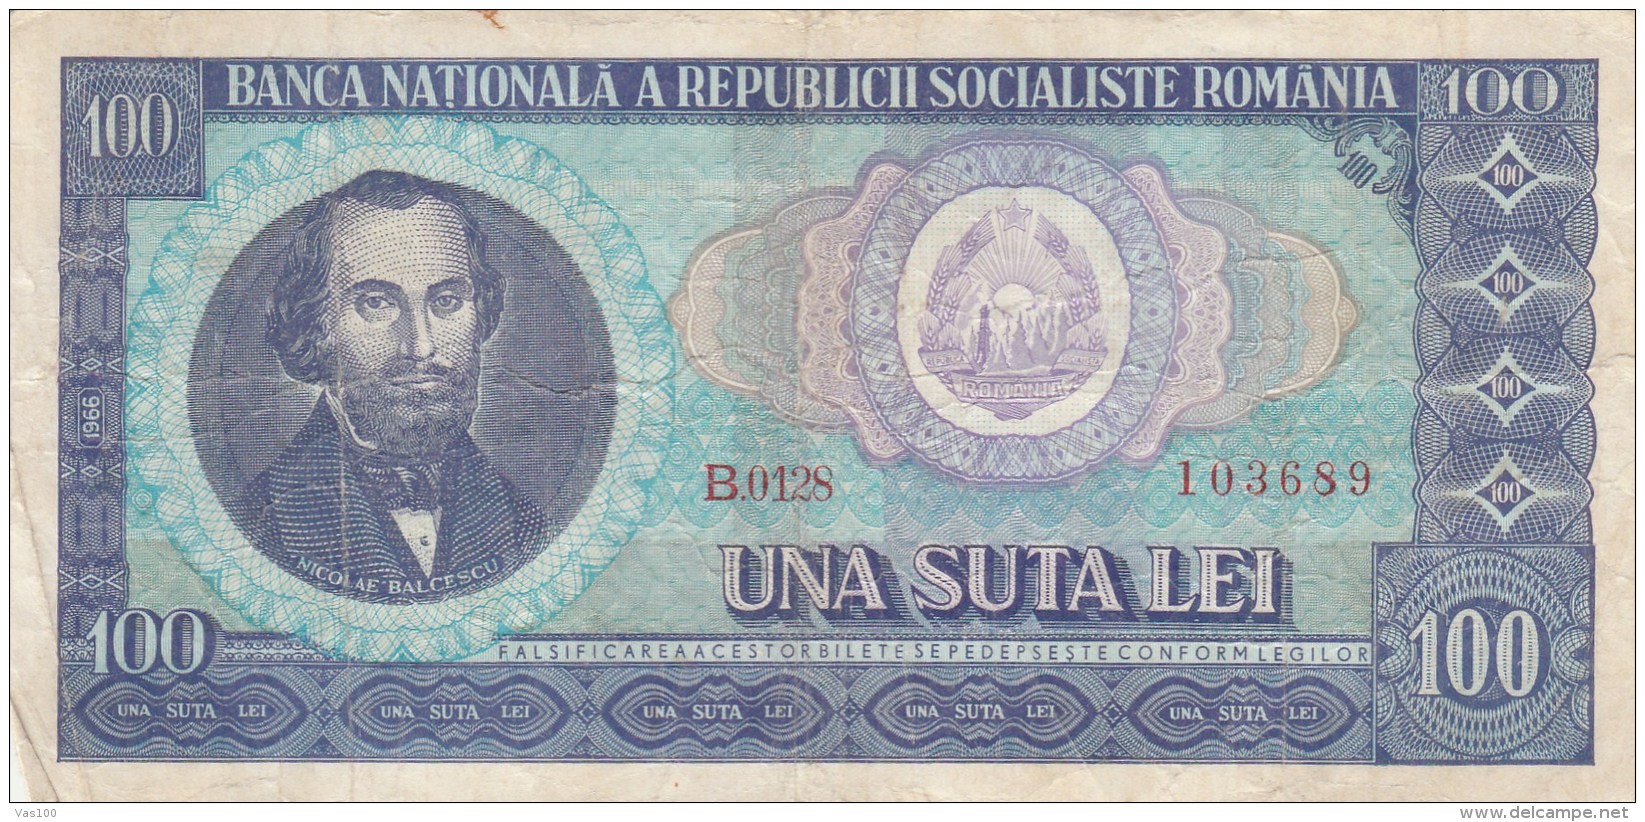 100 LEI, NICOLAE BALCESCU, 1966, PAPER BANKNOTE,ROMANIA. - Romania